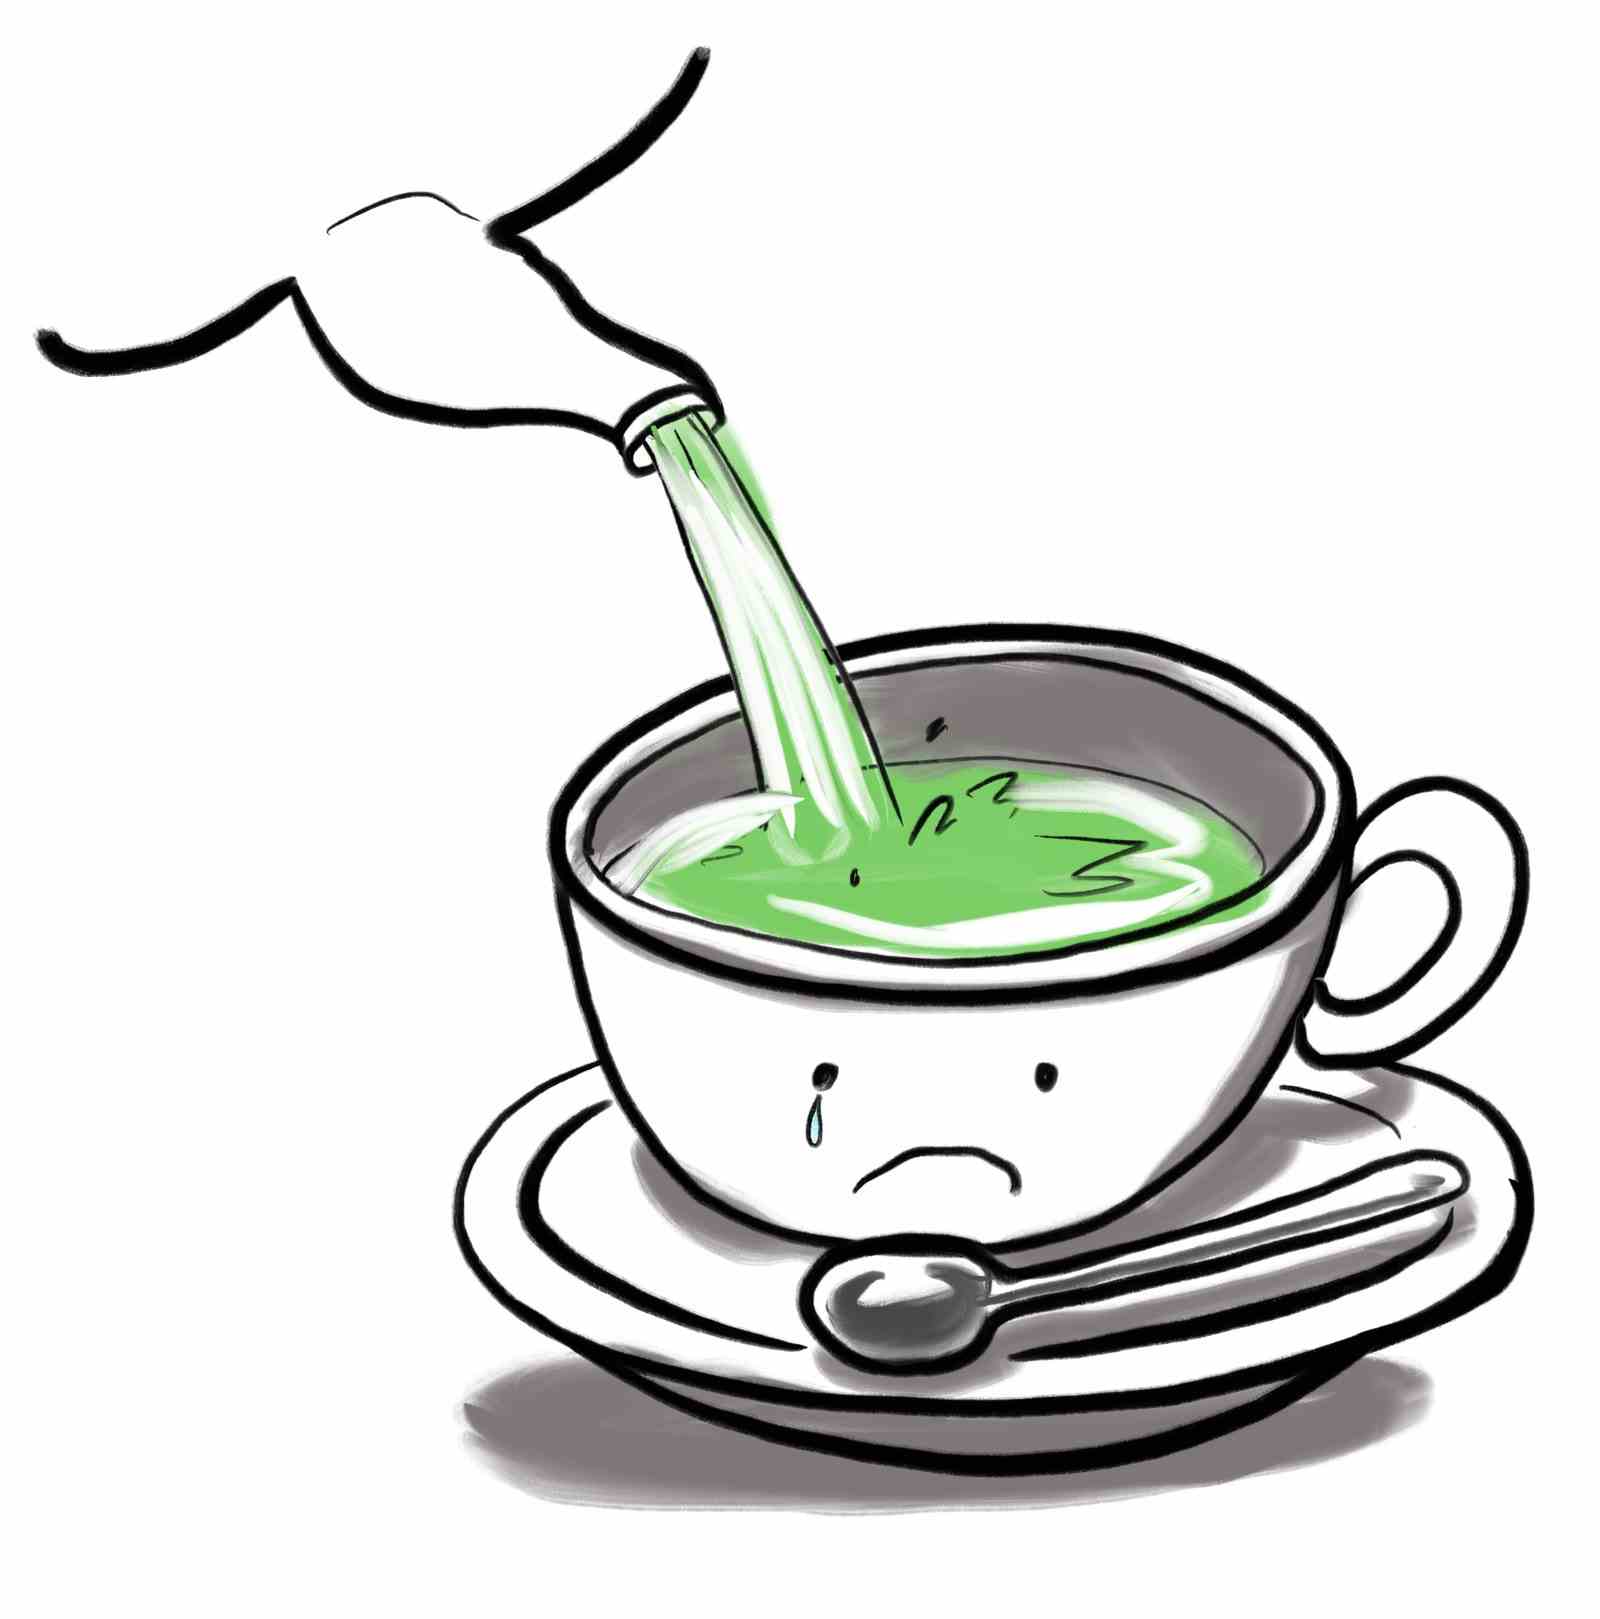 Teetasse runzelt die Stirn, während grüner Tee hineingegossen wird.